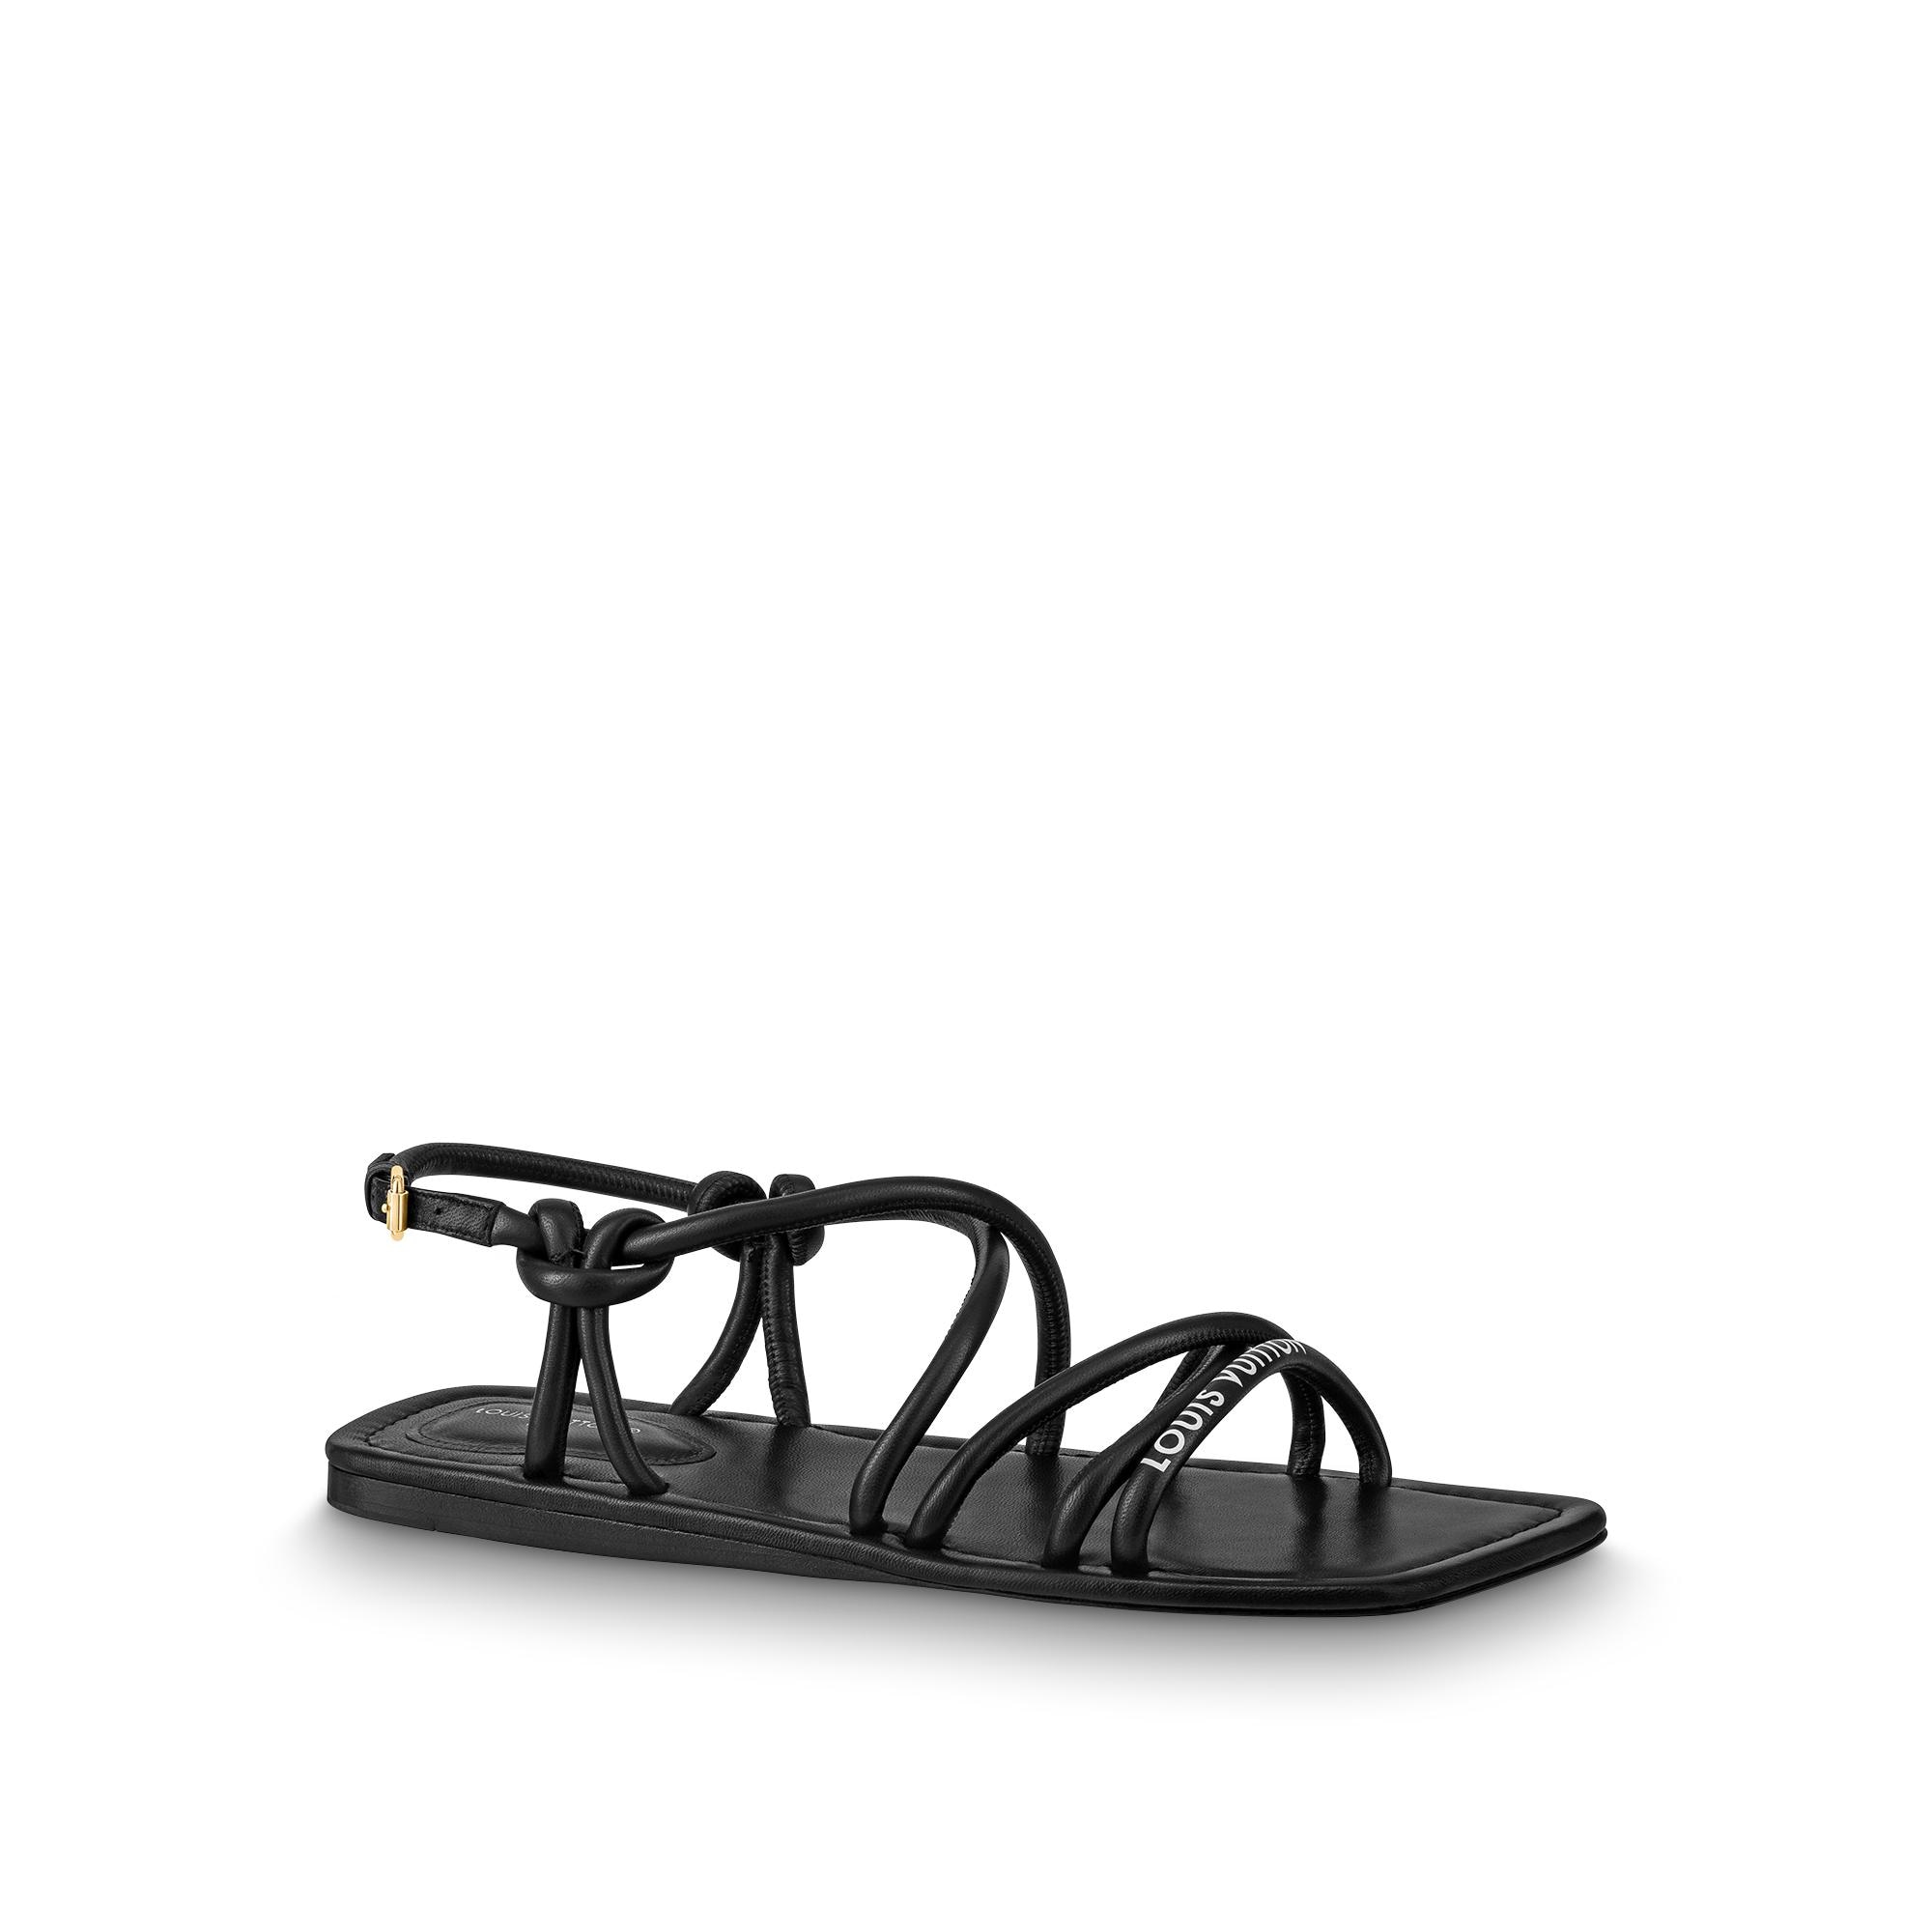 Louis Vuitton Nova Flat Sandal in Black - Shoes 1A9CZK